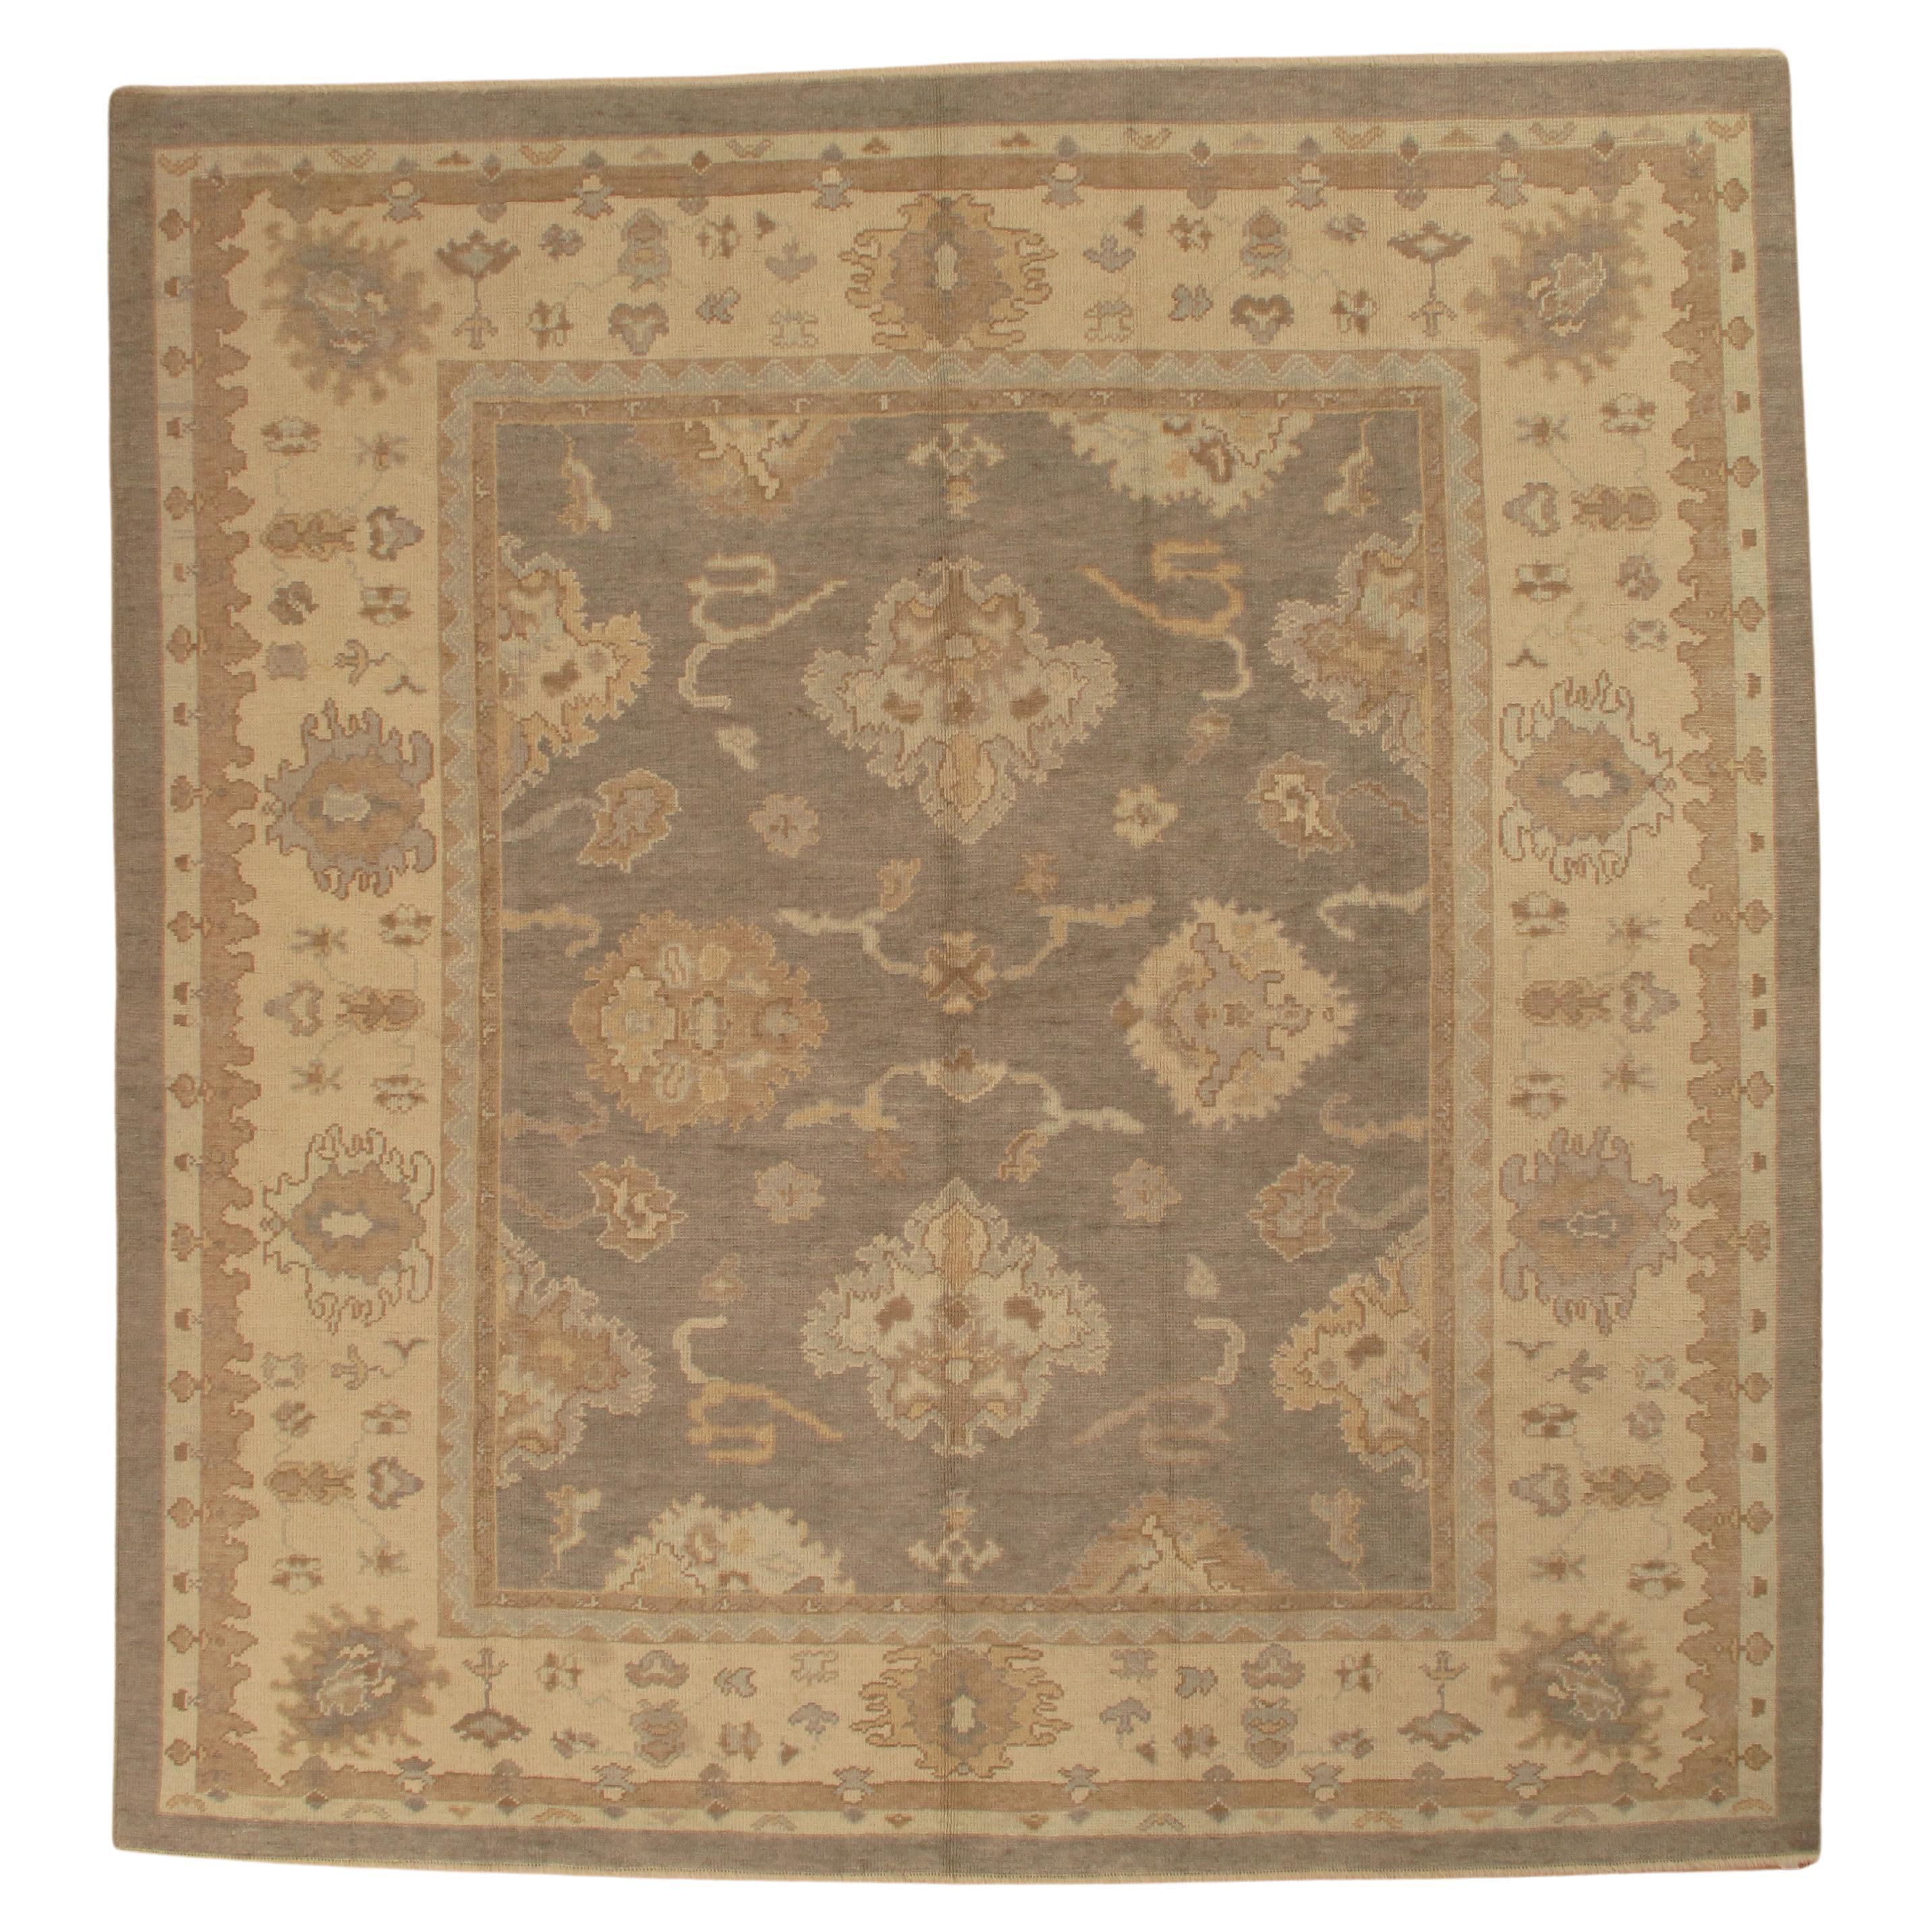 Vintage Oushak Carpet, Oriental Rug, Handmade Grey, Ivory, Saffron For Sale